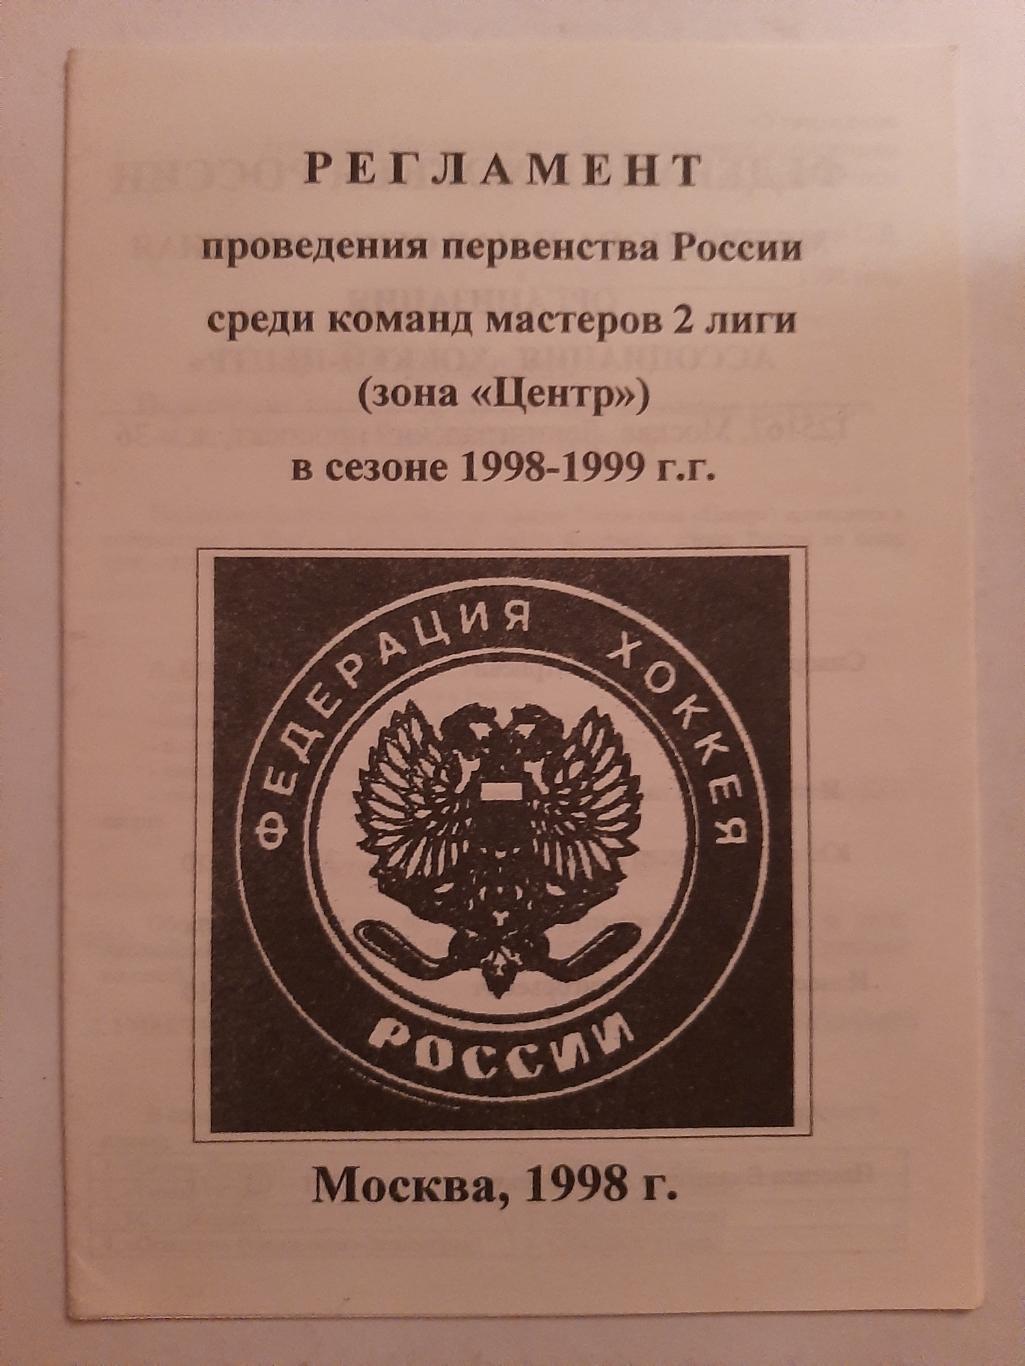 Регламент первенства России в сезоне 1998-1999 Москва